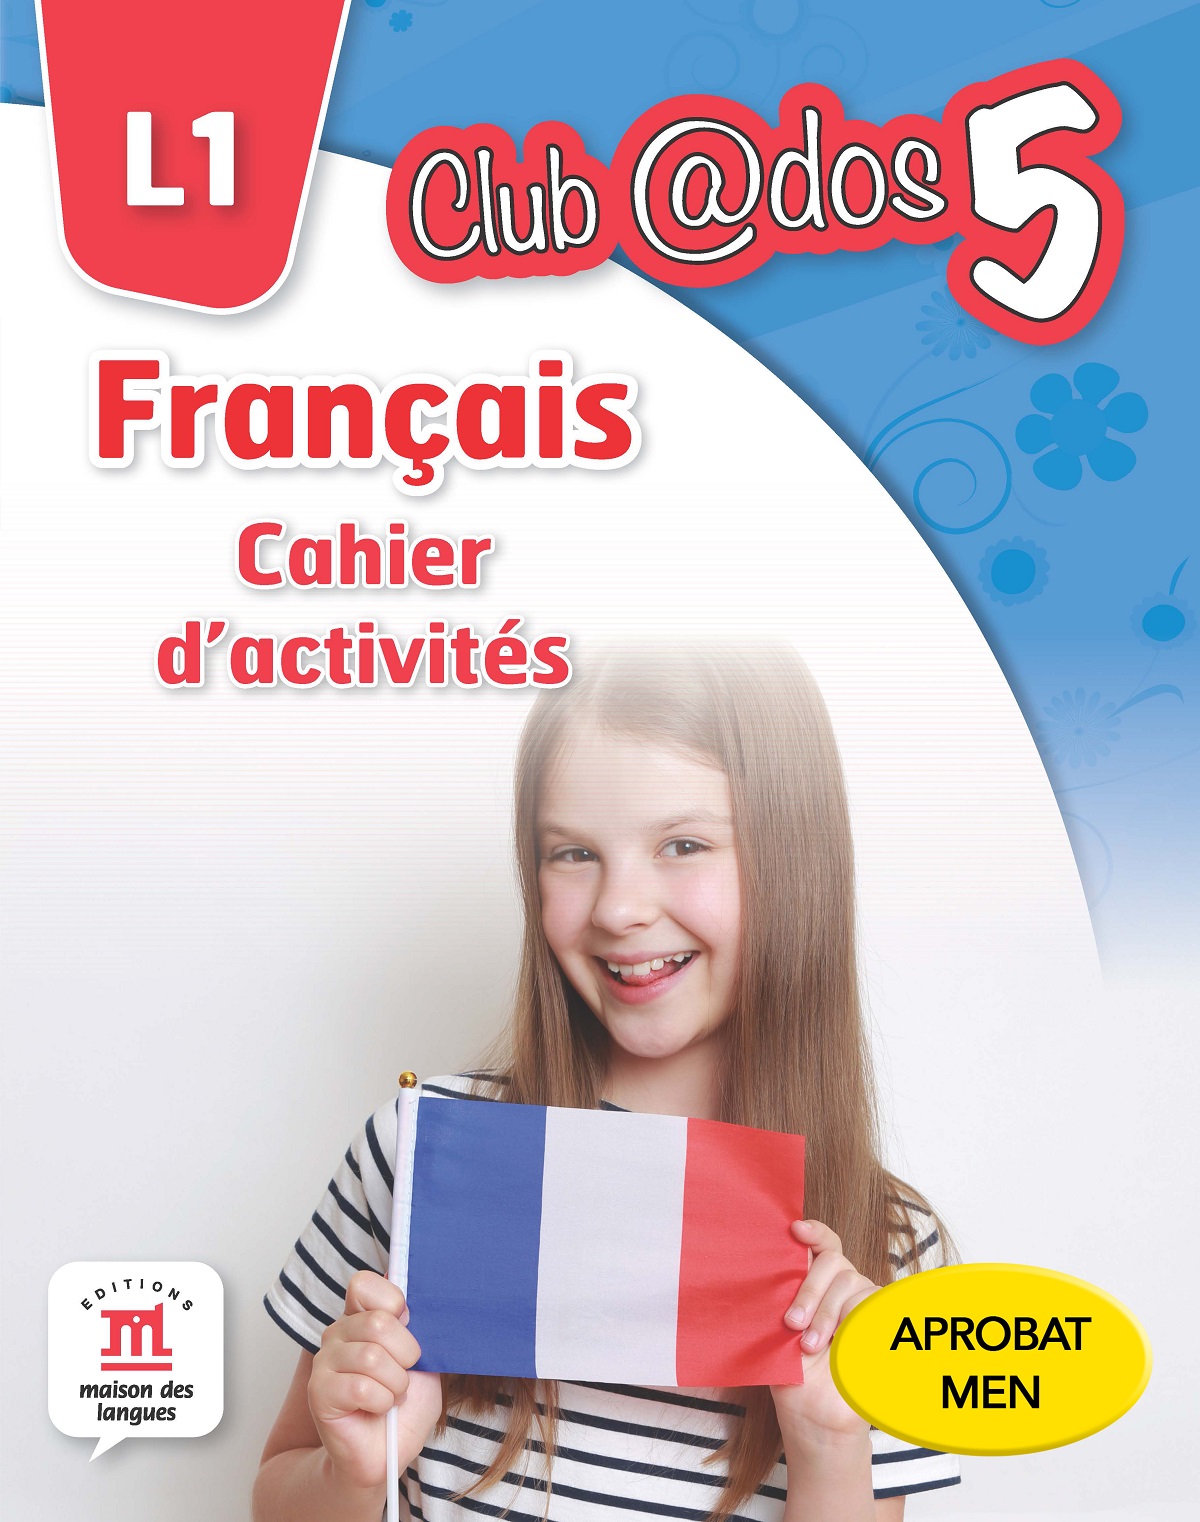 Club Dos. Francais L1. Cahier d'activites. Lectia de franceza - Clasa 5 - Raisa Elena Vlad, Mariana Visan